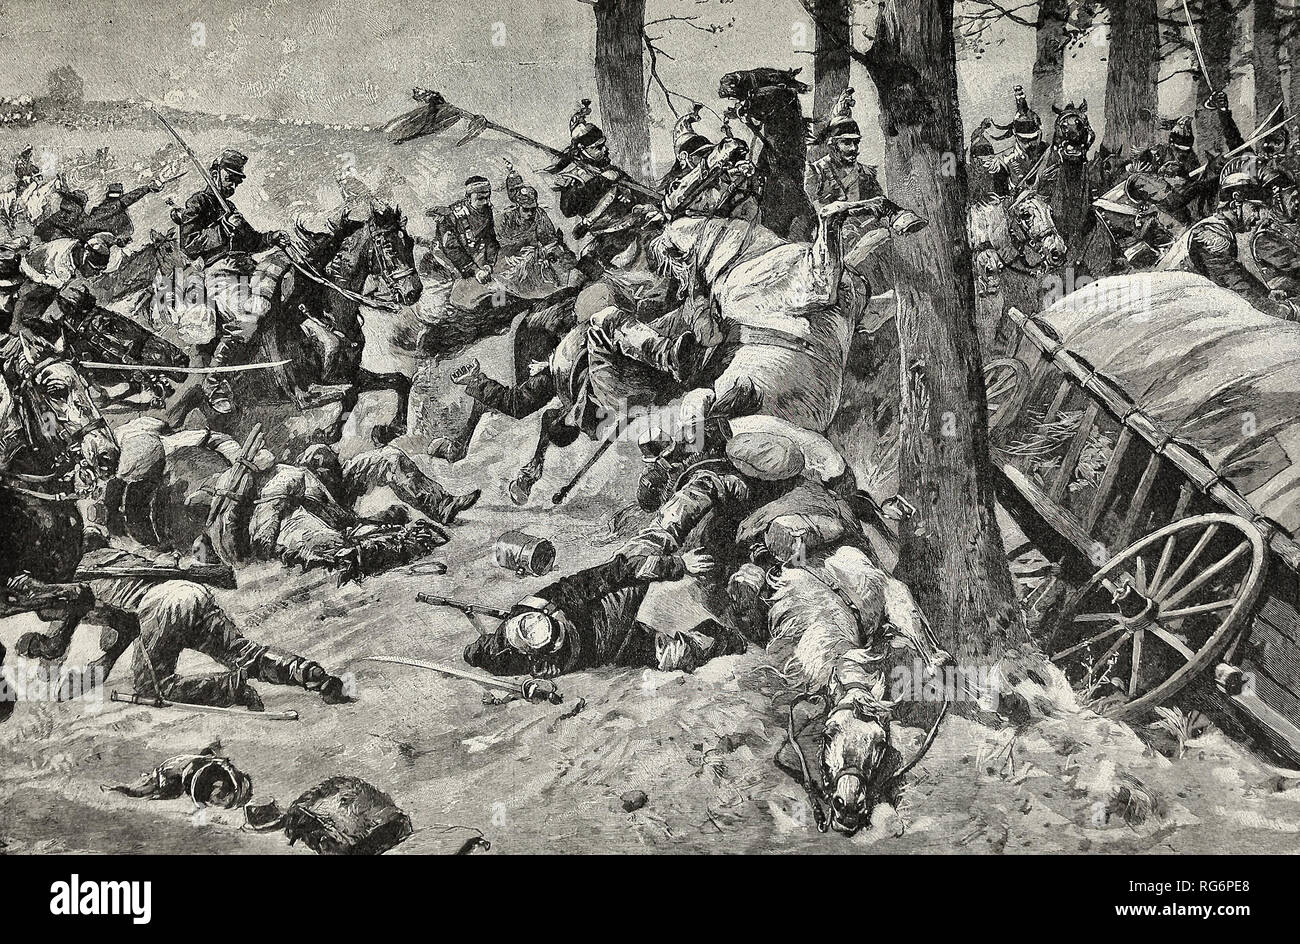 Der Sturz von Frankreich - Die verzweifelte, aber hoffnungslos für die französische Kavallerie bei Sedan Stockfoto